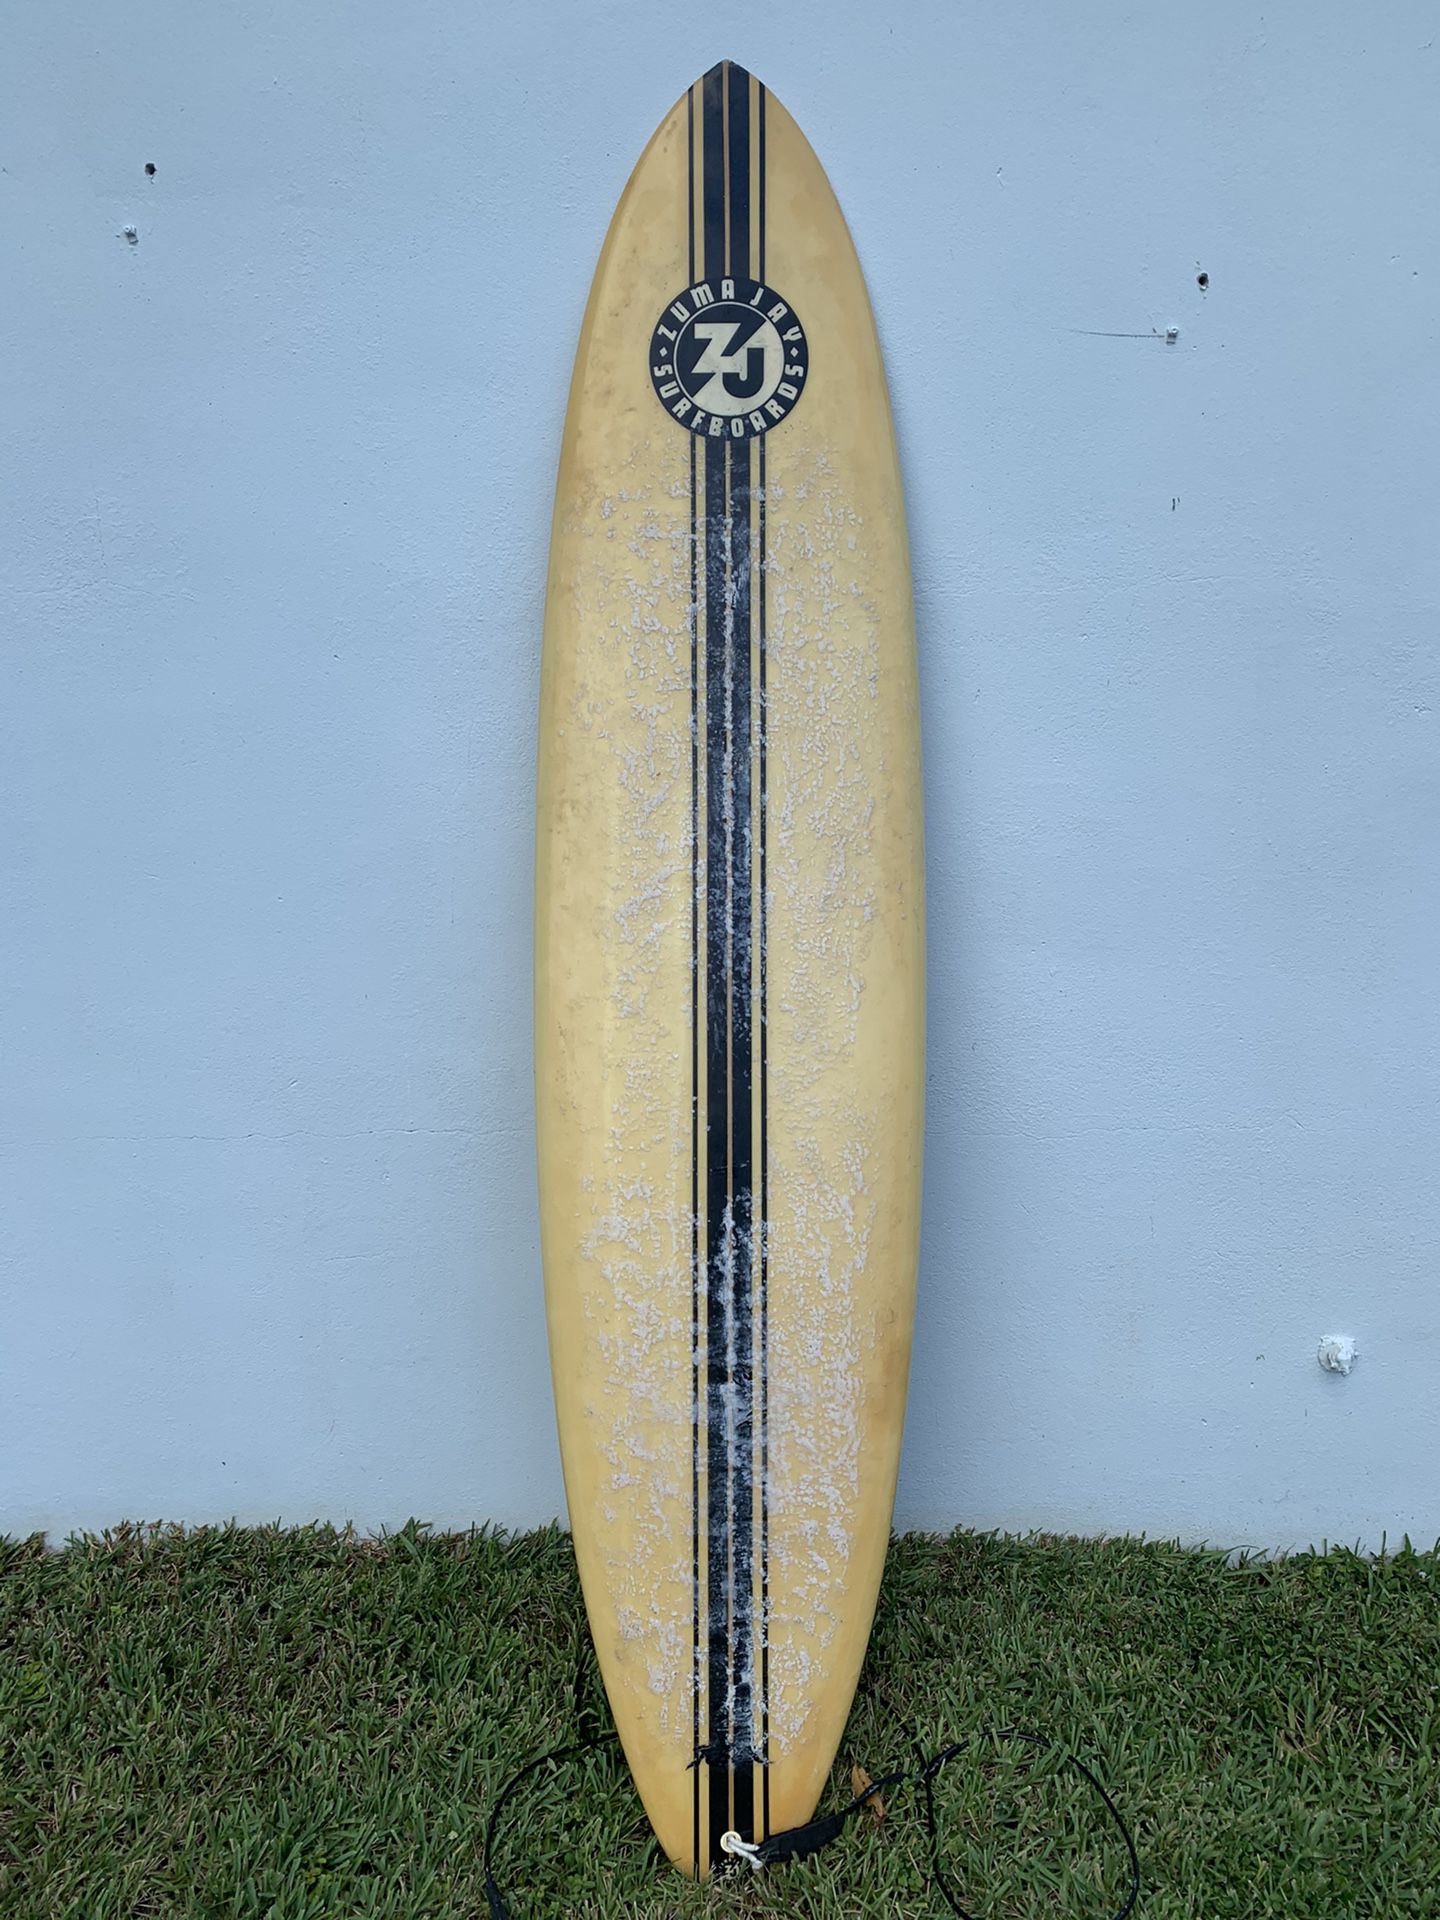 Zuma Jay Malibu California 7’ 8” Surfboard 3 Fins W/ Leash